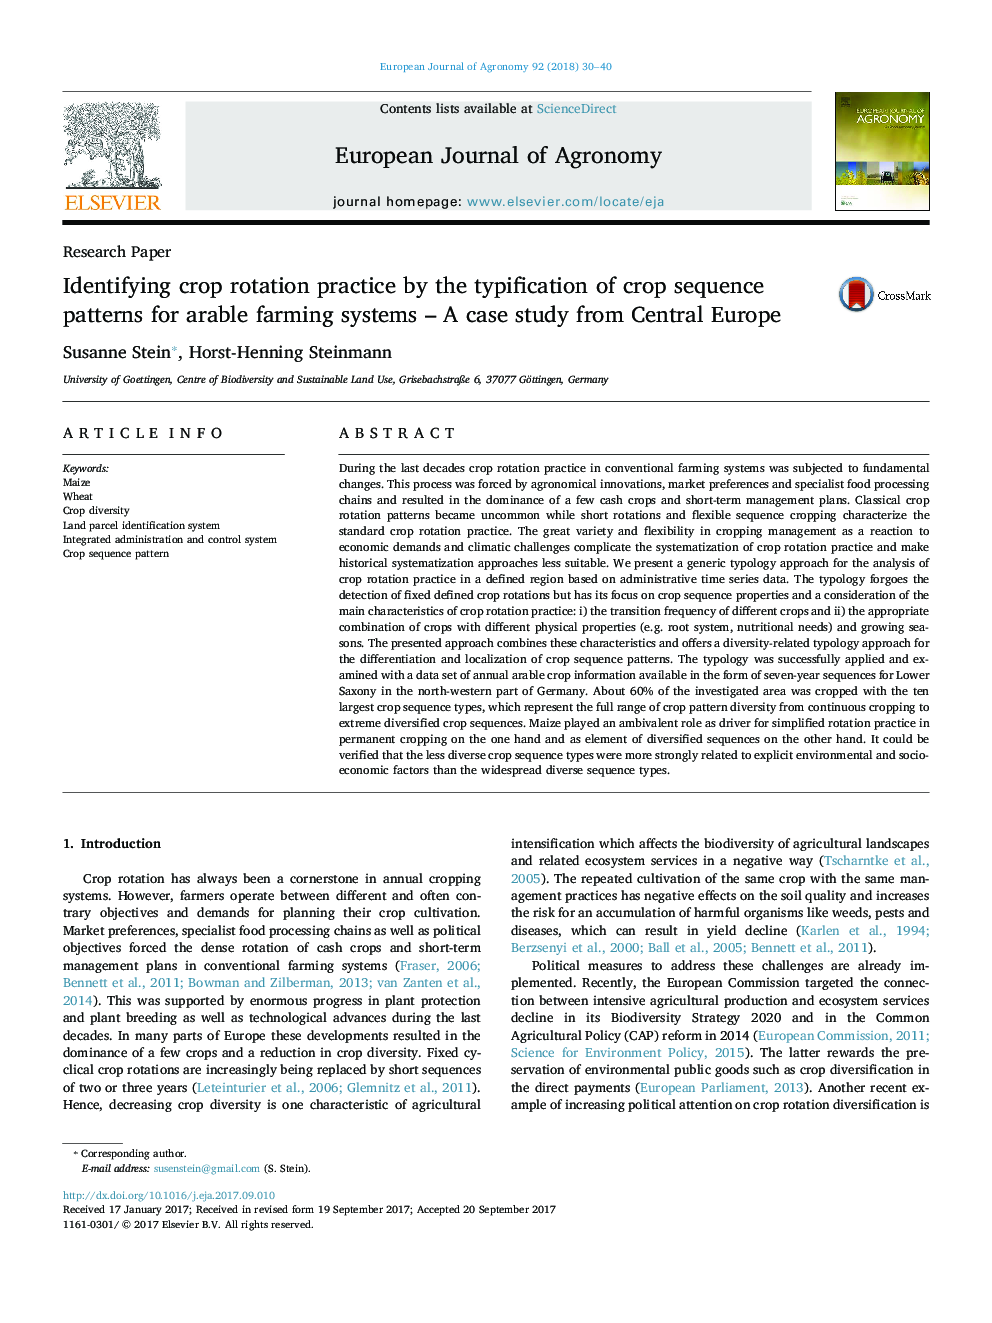 شناسایی عملکرد چرخش محصول با تایپیه الگوهای توالی محصول برای سیستم های کشاورزی مزرعه - مطالعه موردی از مرکز اروپا